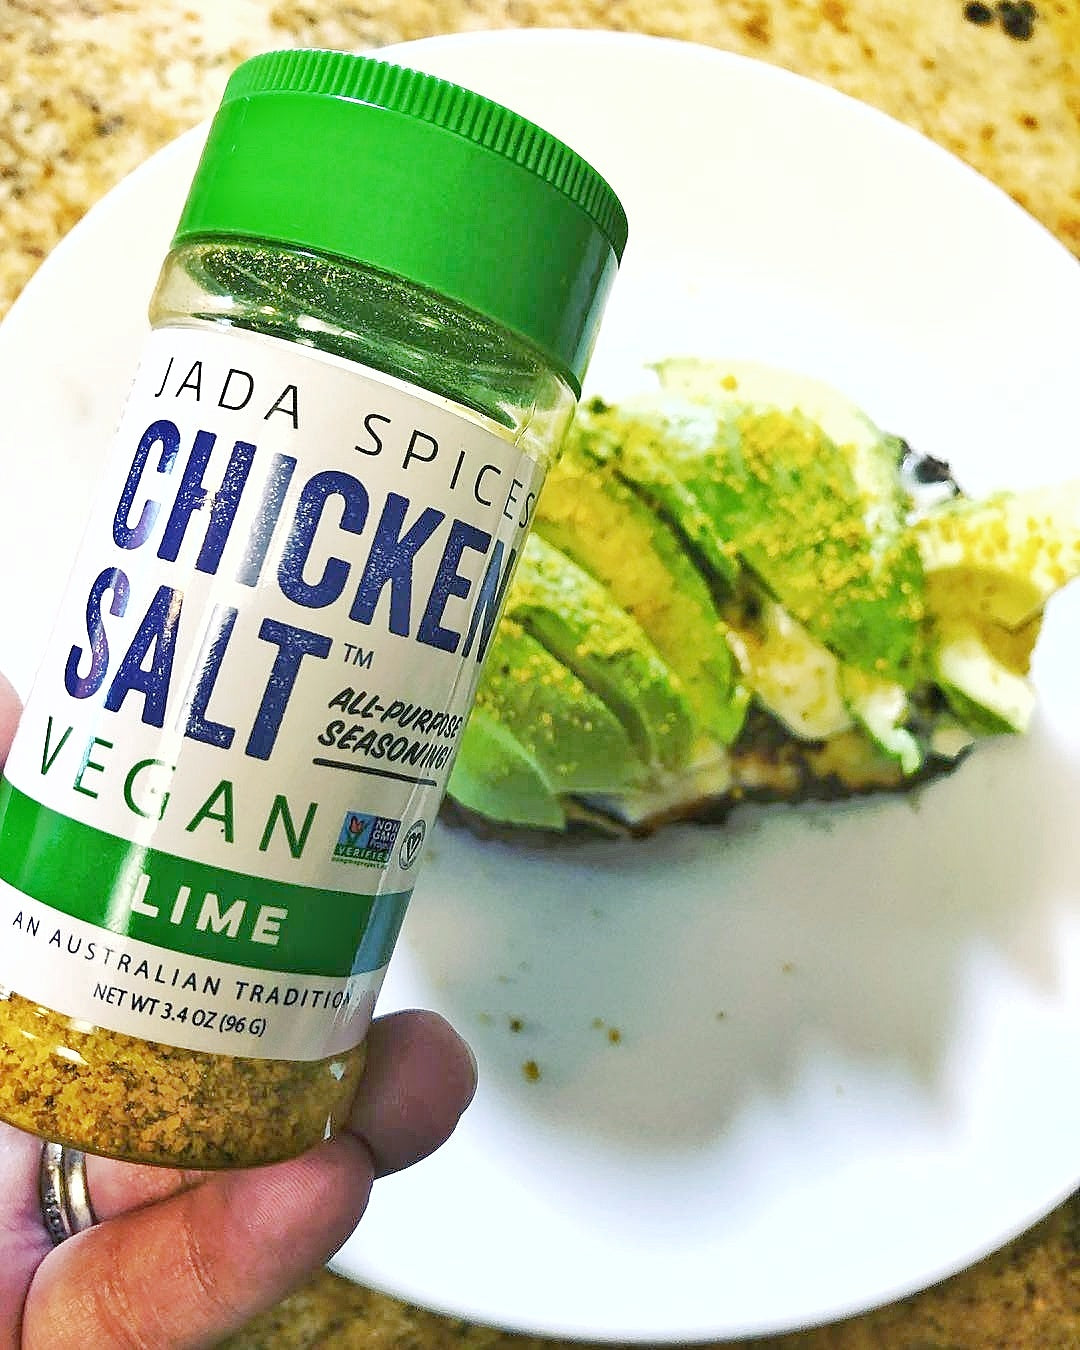 Vegan Chicken Salt- JADA SPICES - MSG FREE, NON GMO, GLUTEN FREE – JADA  Brands